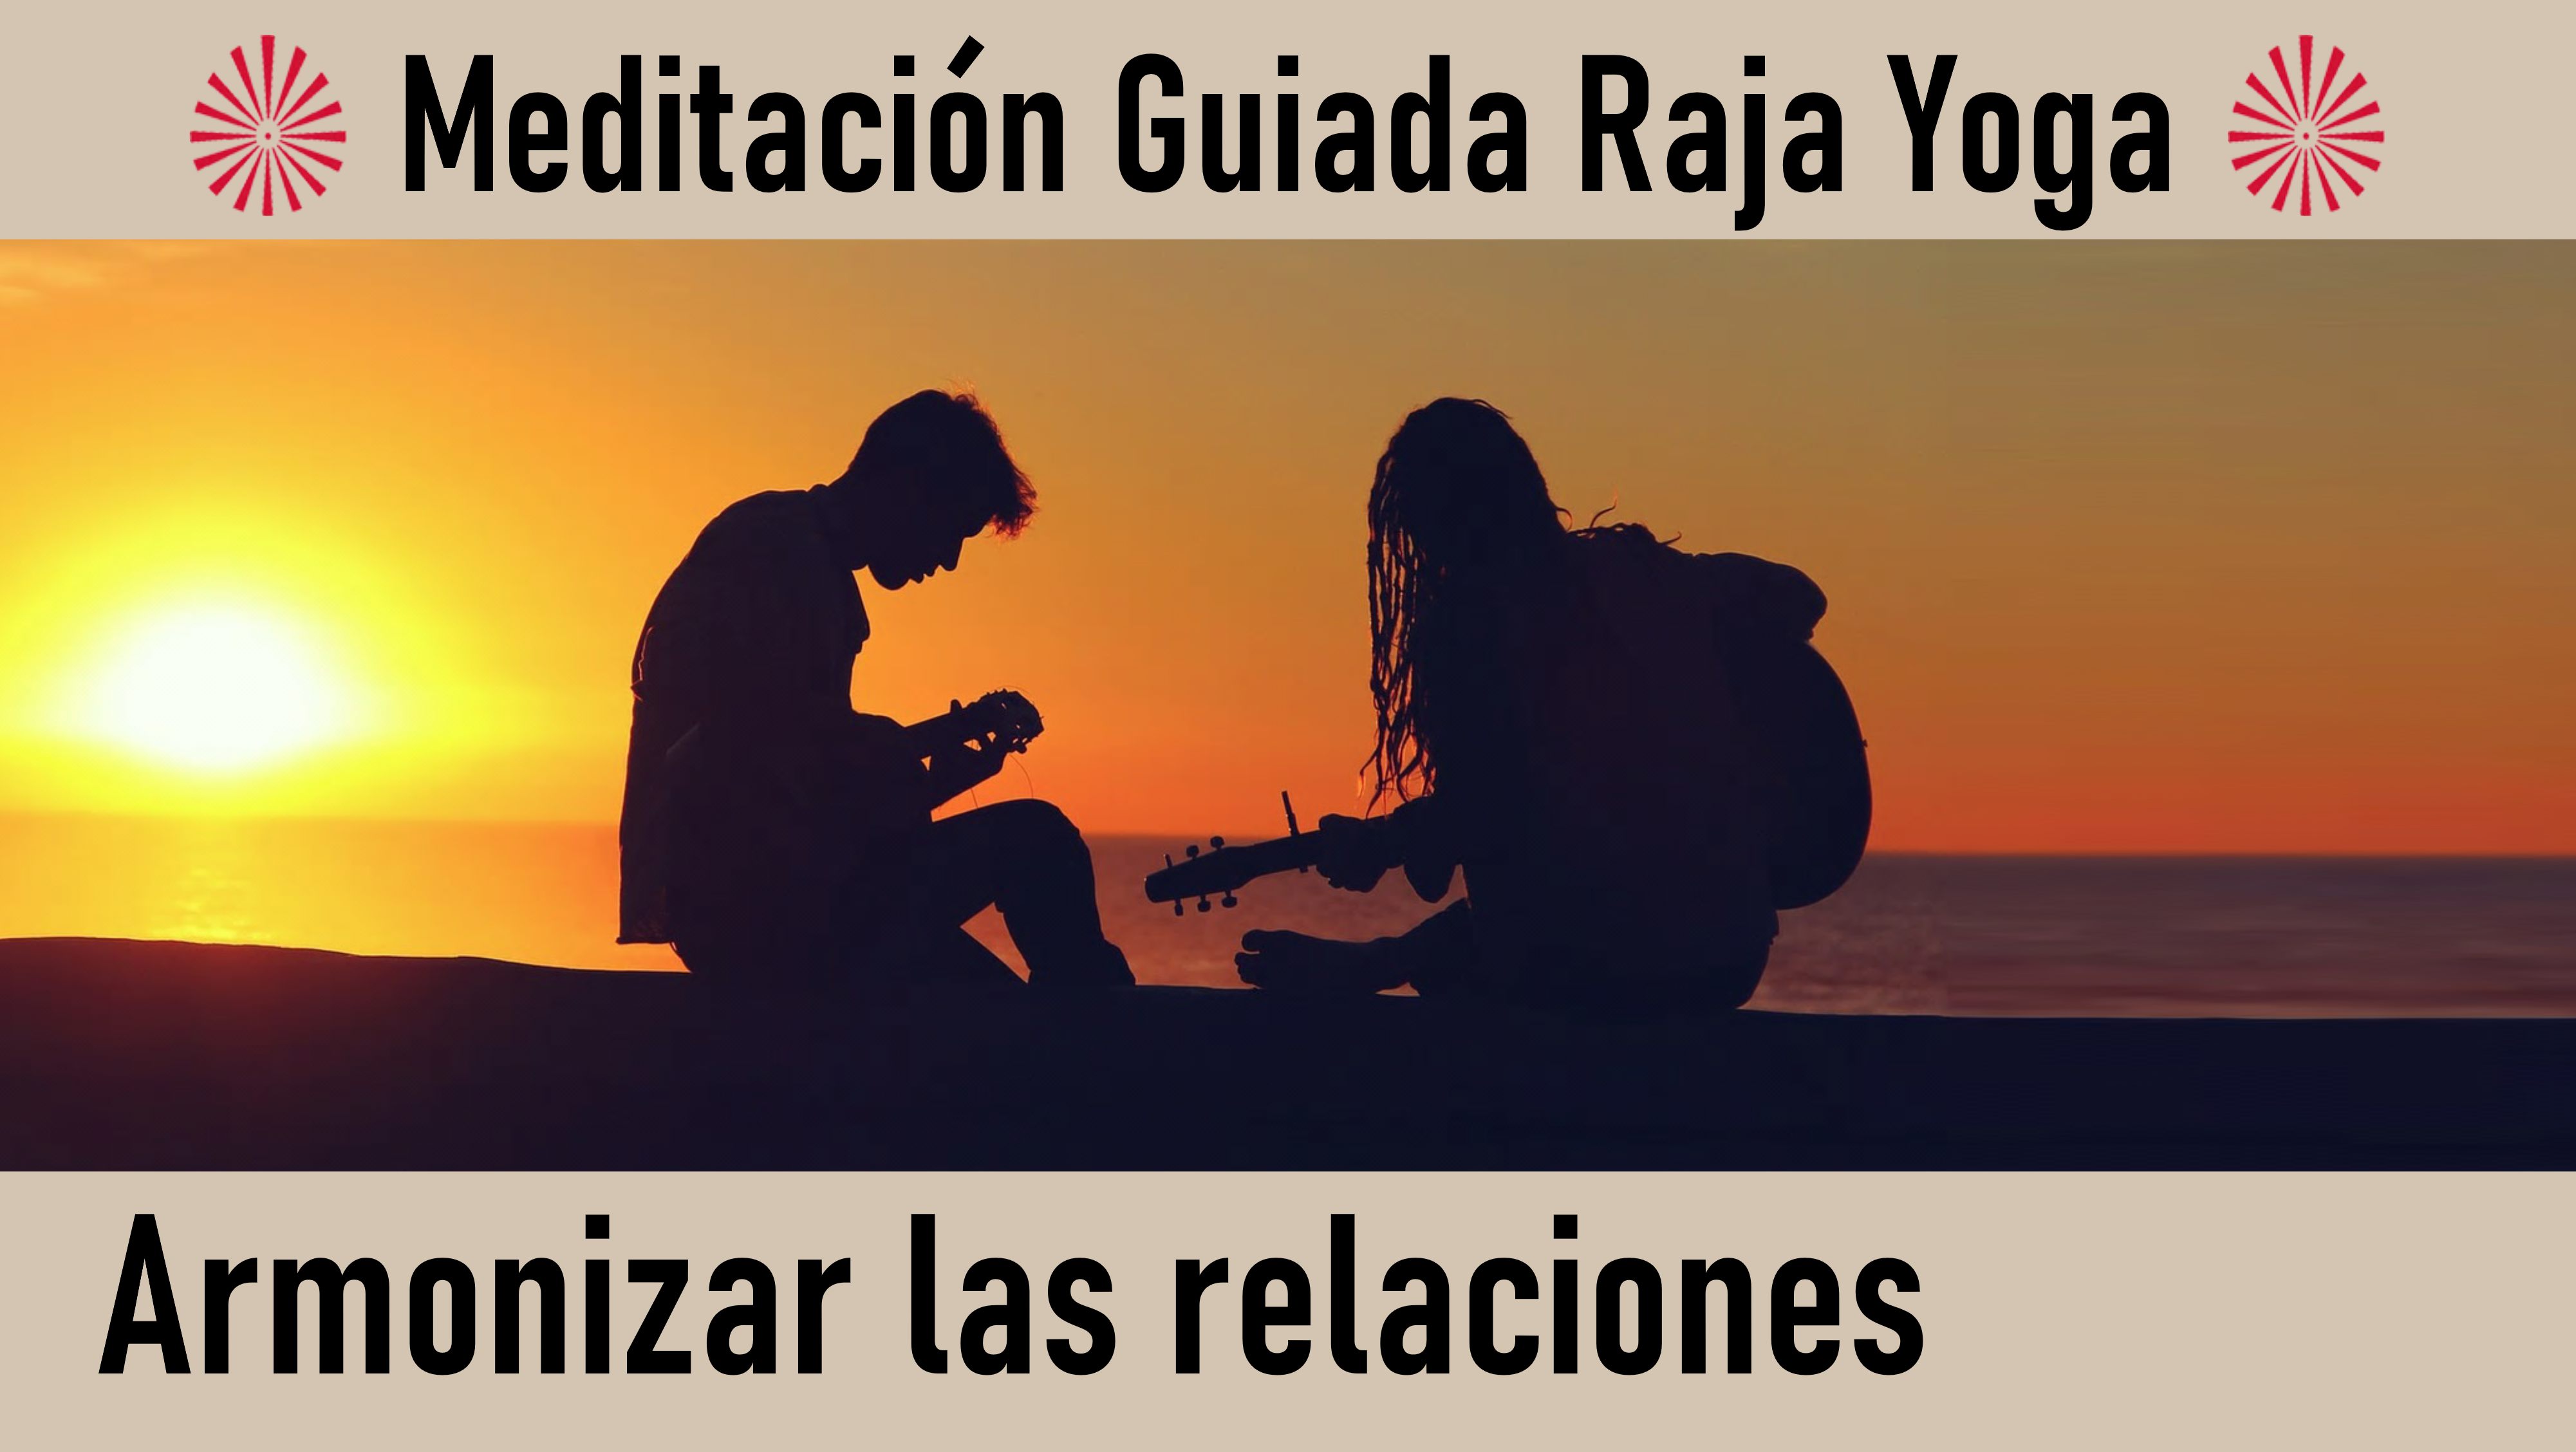 Meditación Raja Yoga: Armonizar las relaciones (1 Julio 2020) On-line desde Madrid